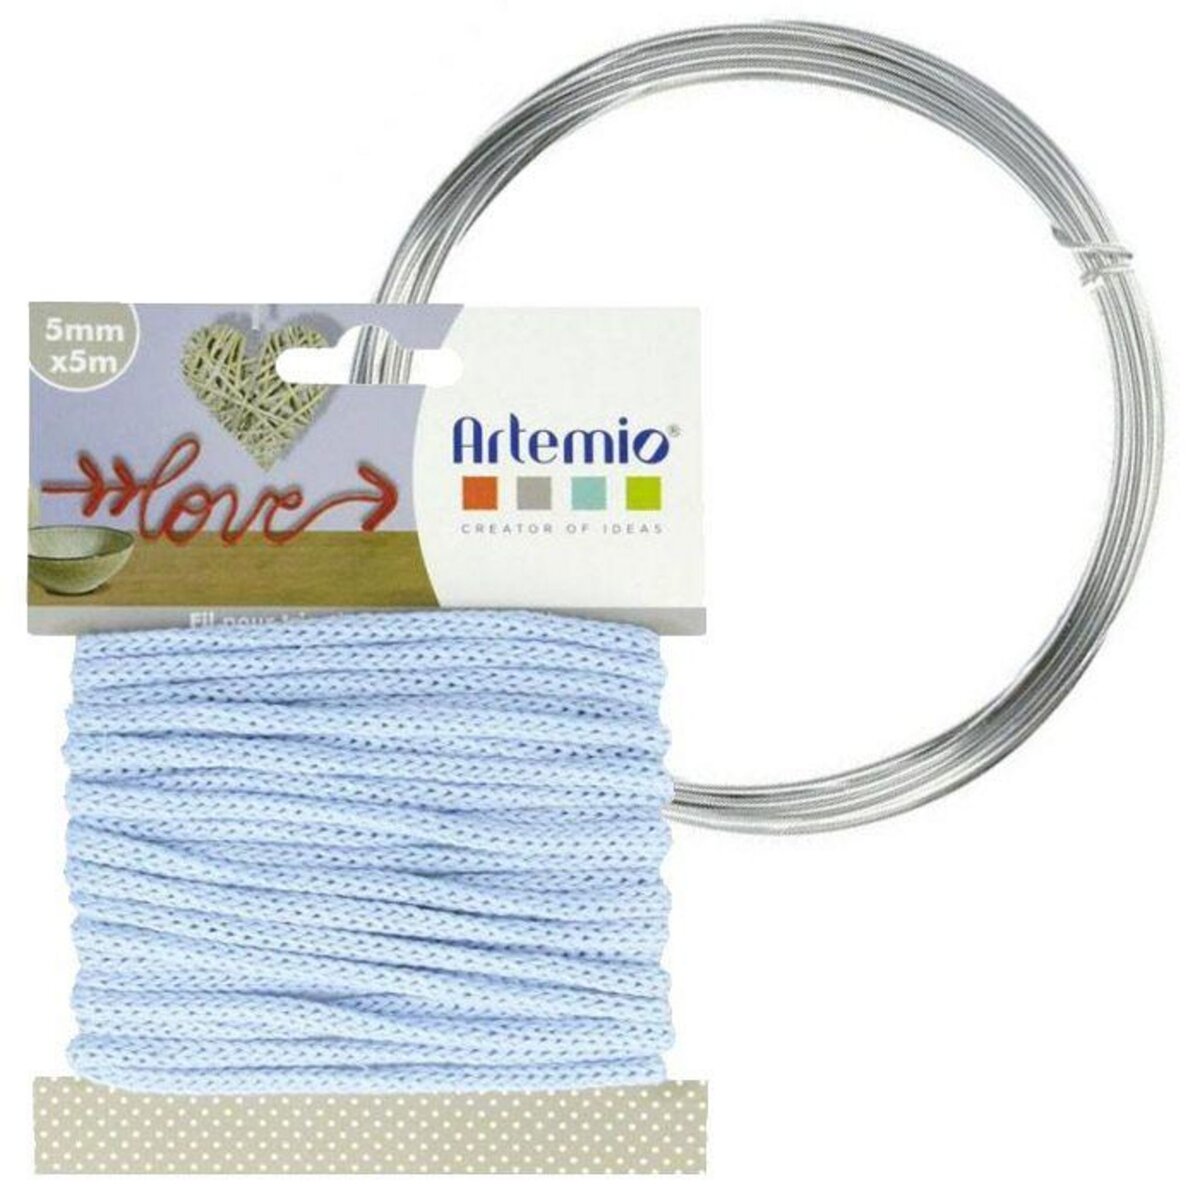 Artemio Fil à tricotin bleu clair 5 mm x 5 m + fil d'aluminium